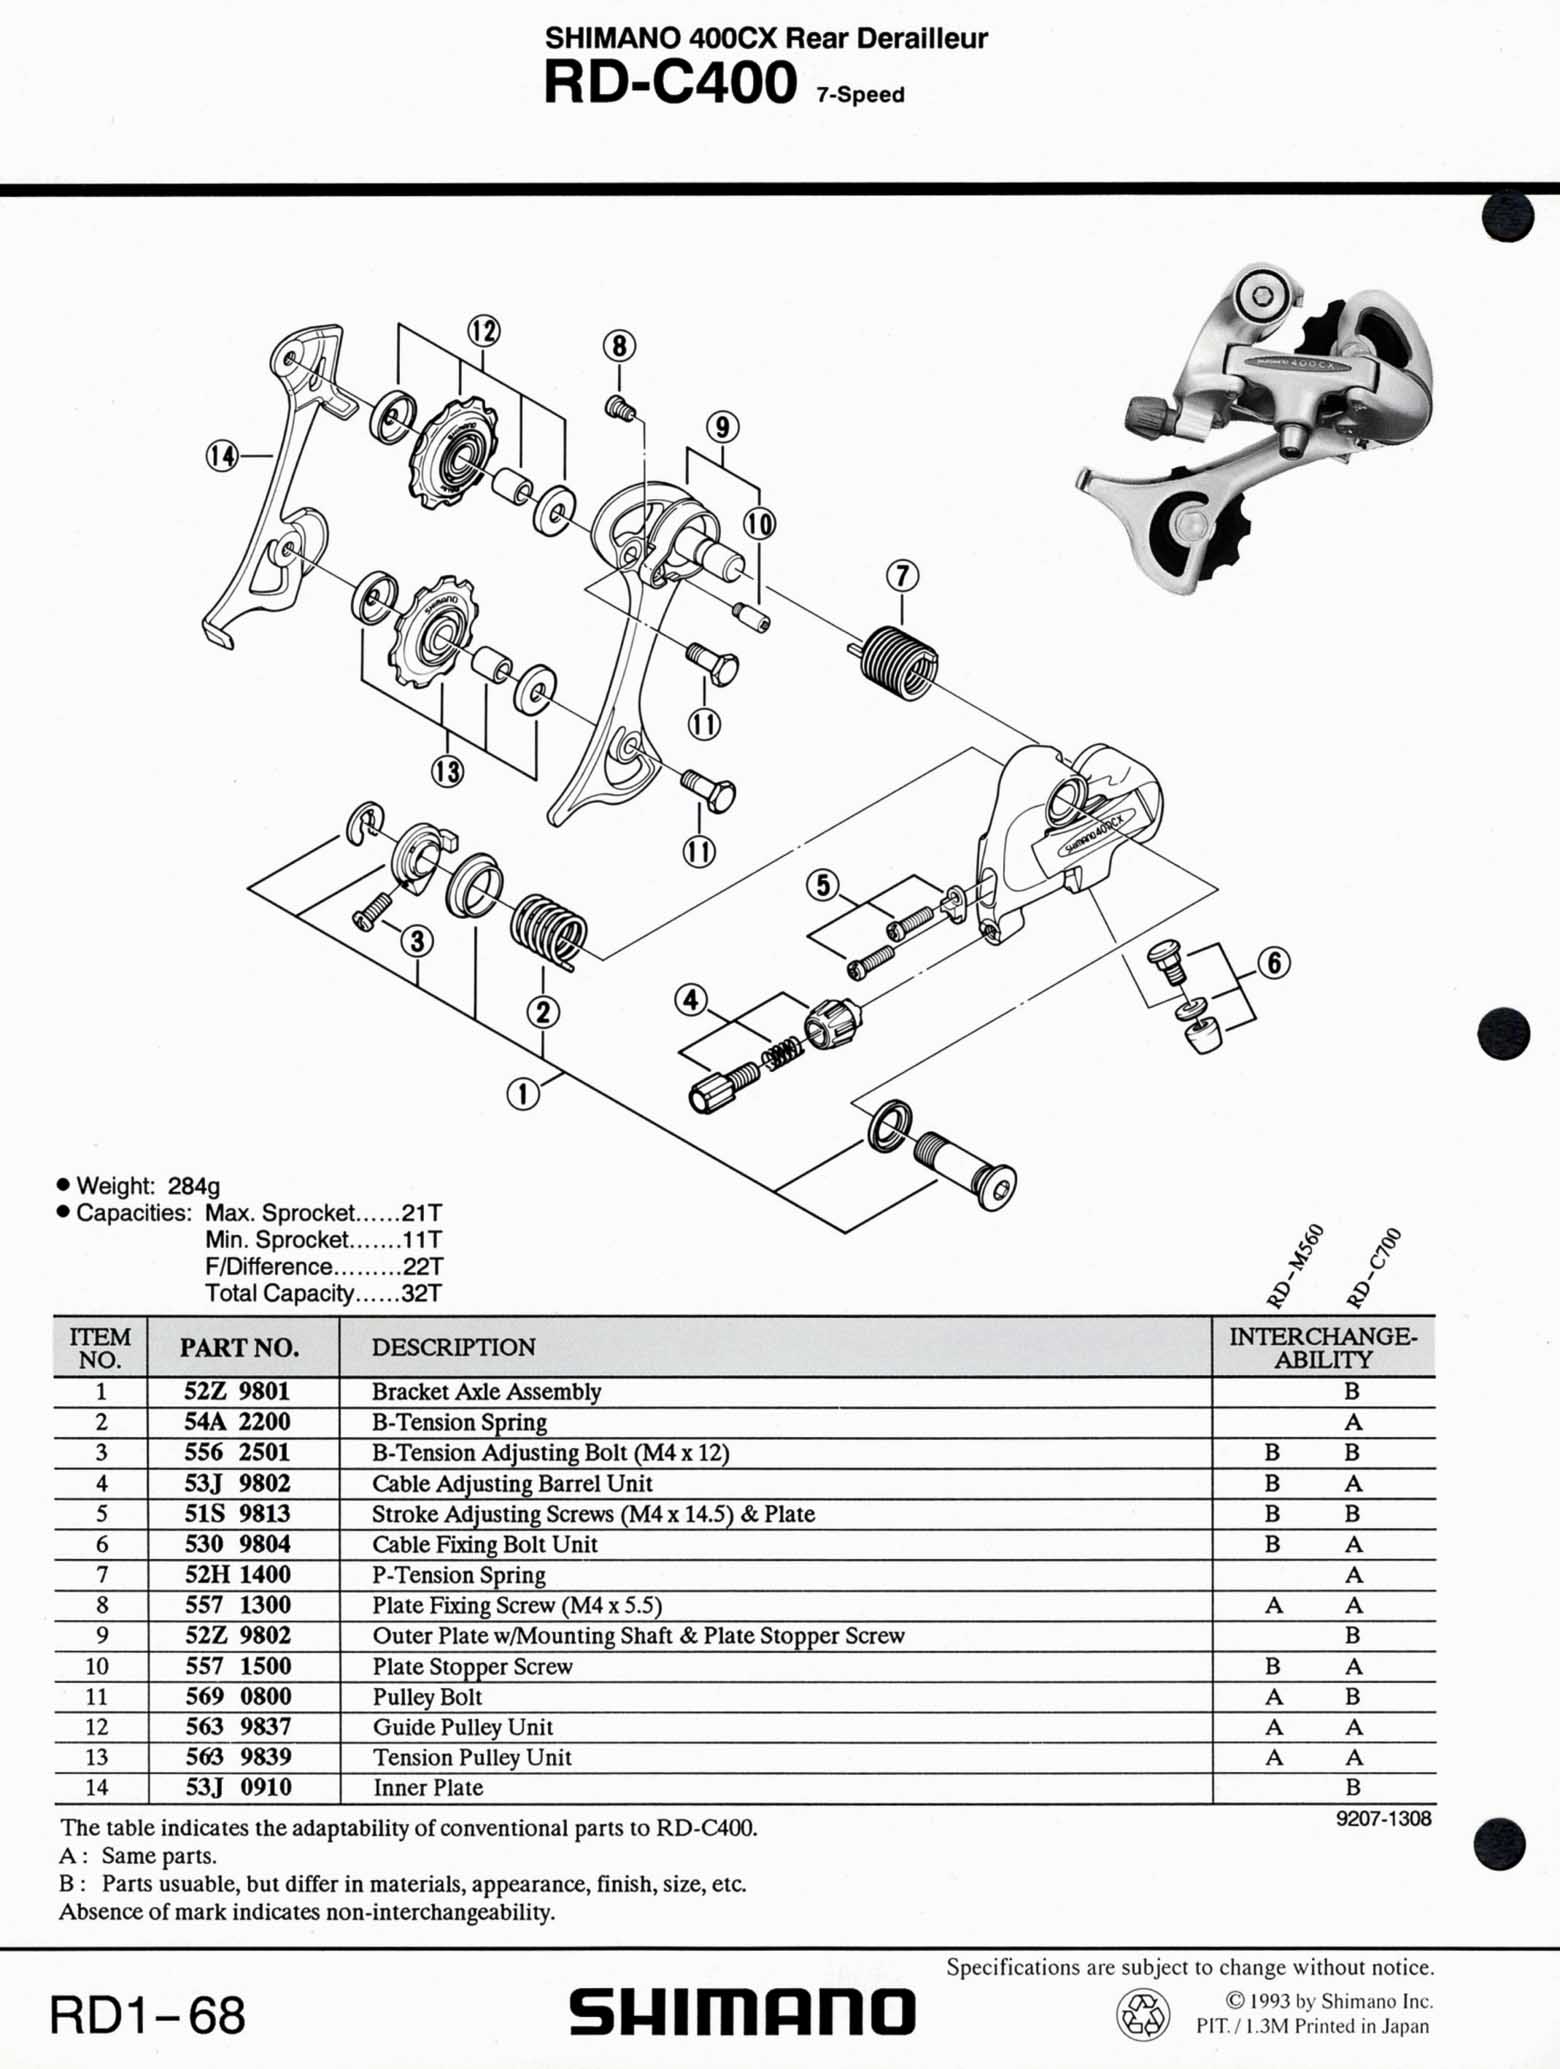 Shimano Bicycle Parts - 1993 scan 10 main image